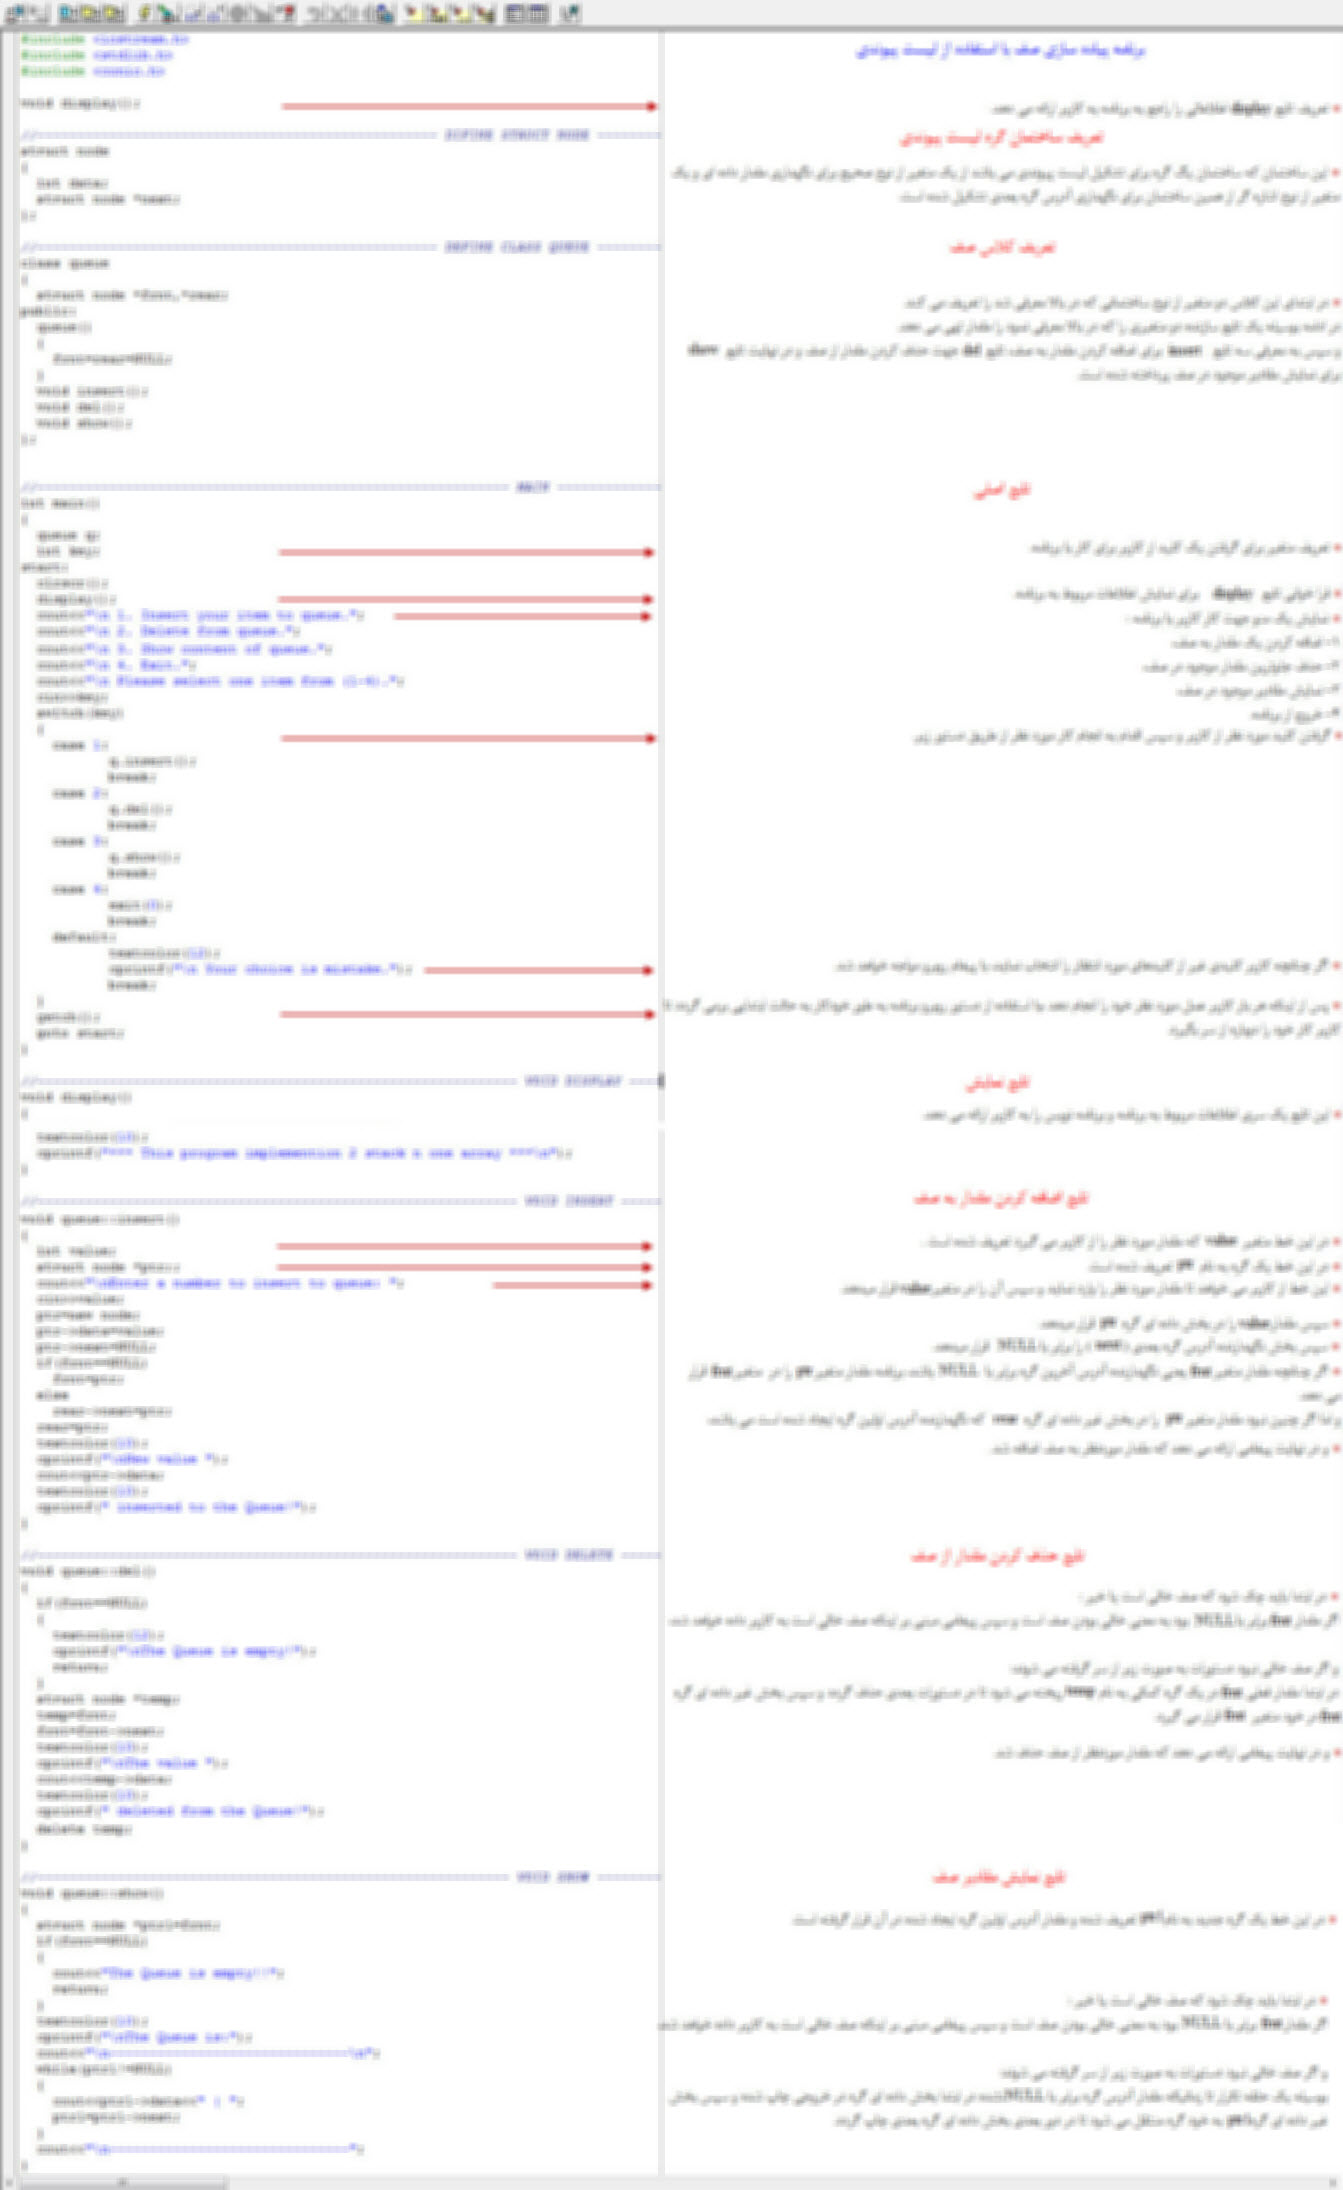 سورس برنامه پیاده سازی صف با استفاده از لیست پیوندی